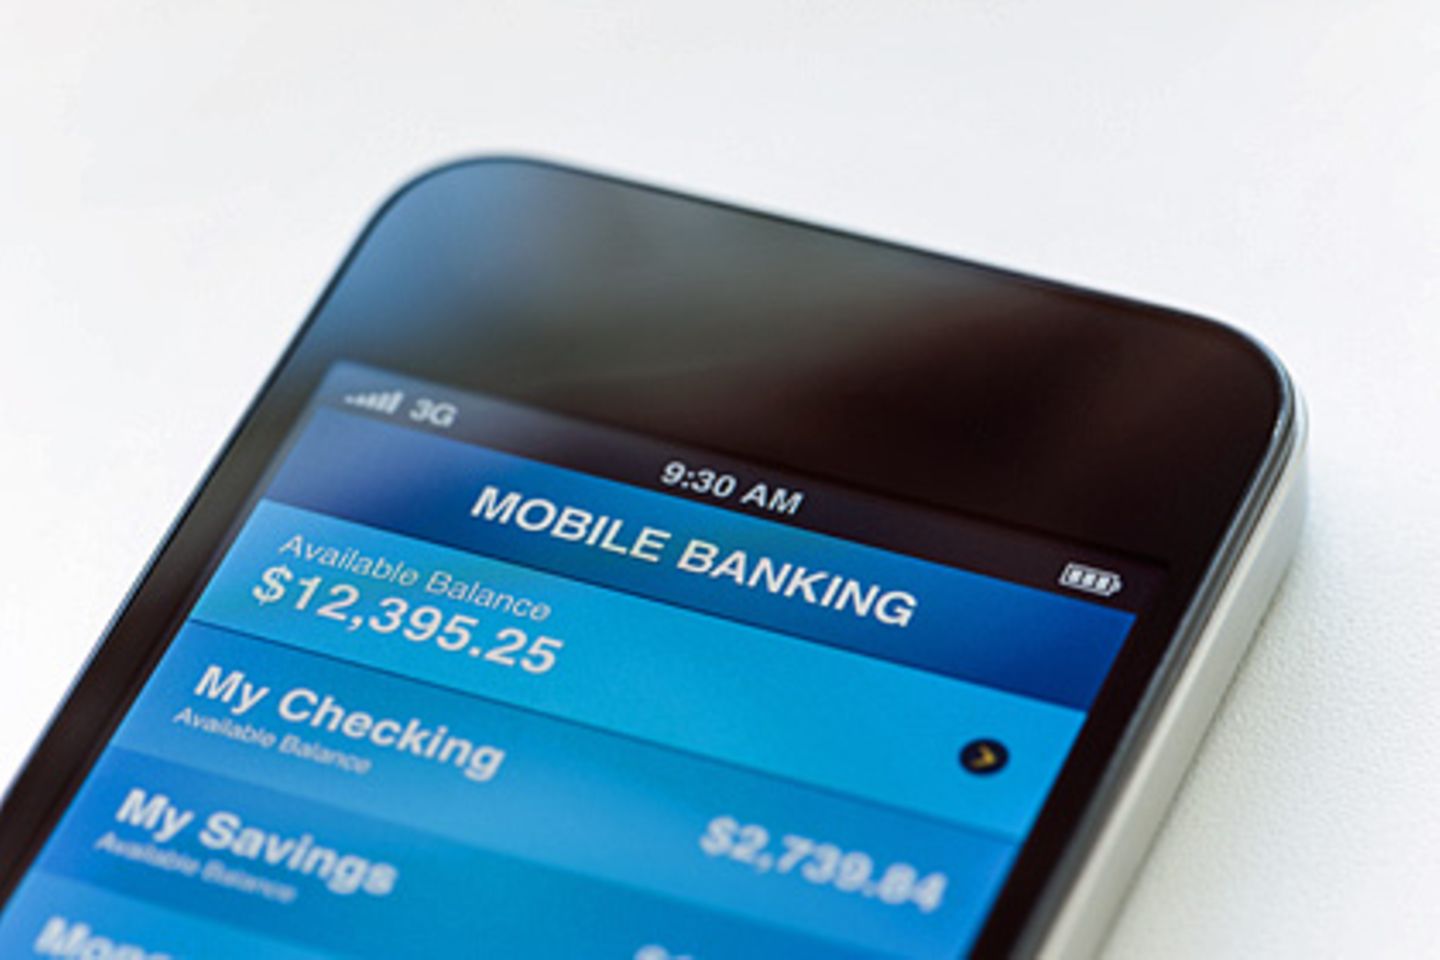 Onlinebanking via Smartphone ist praktisch, bietet aber auch Risiken